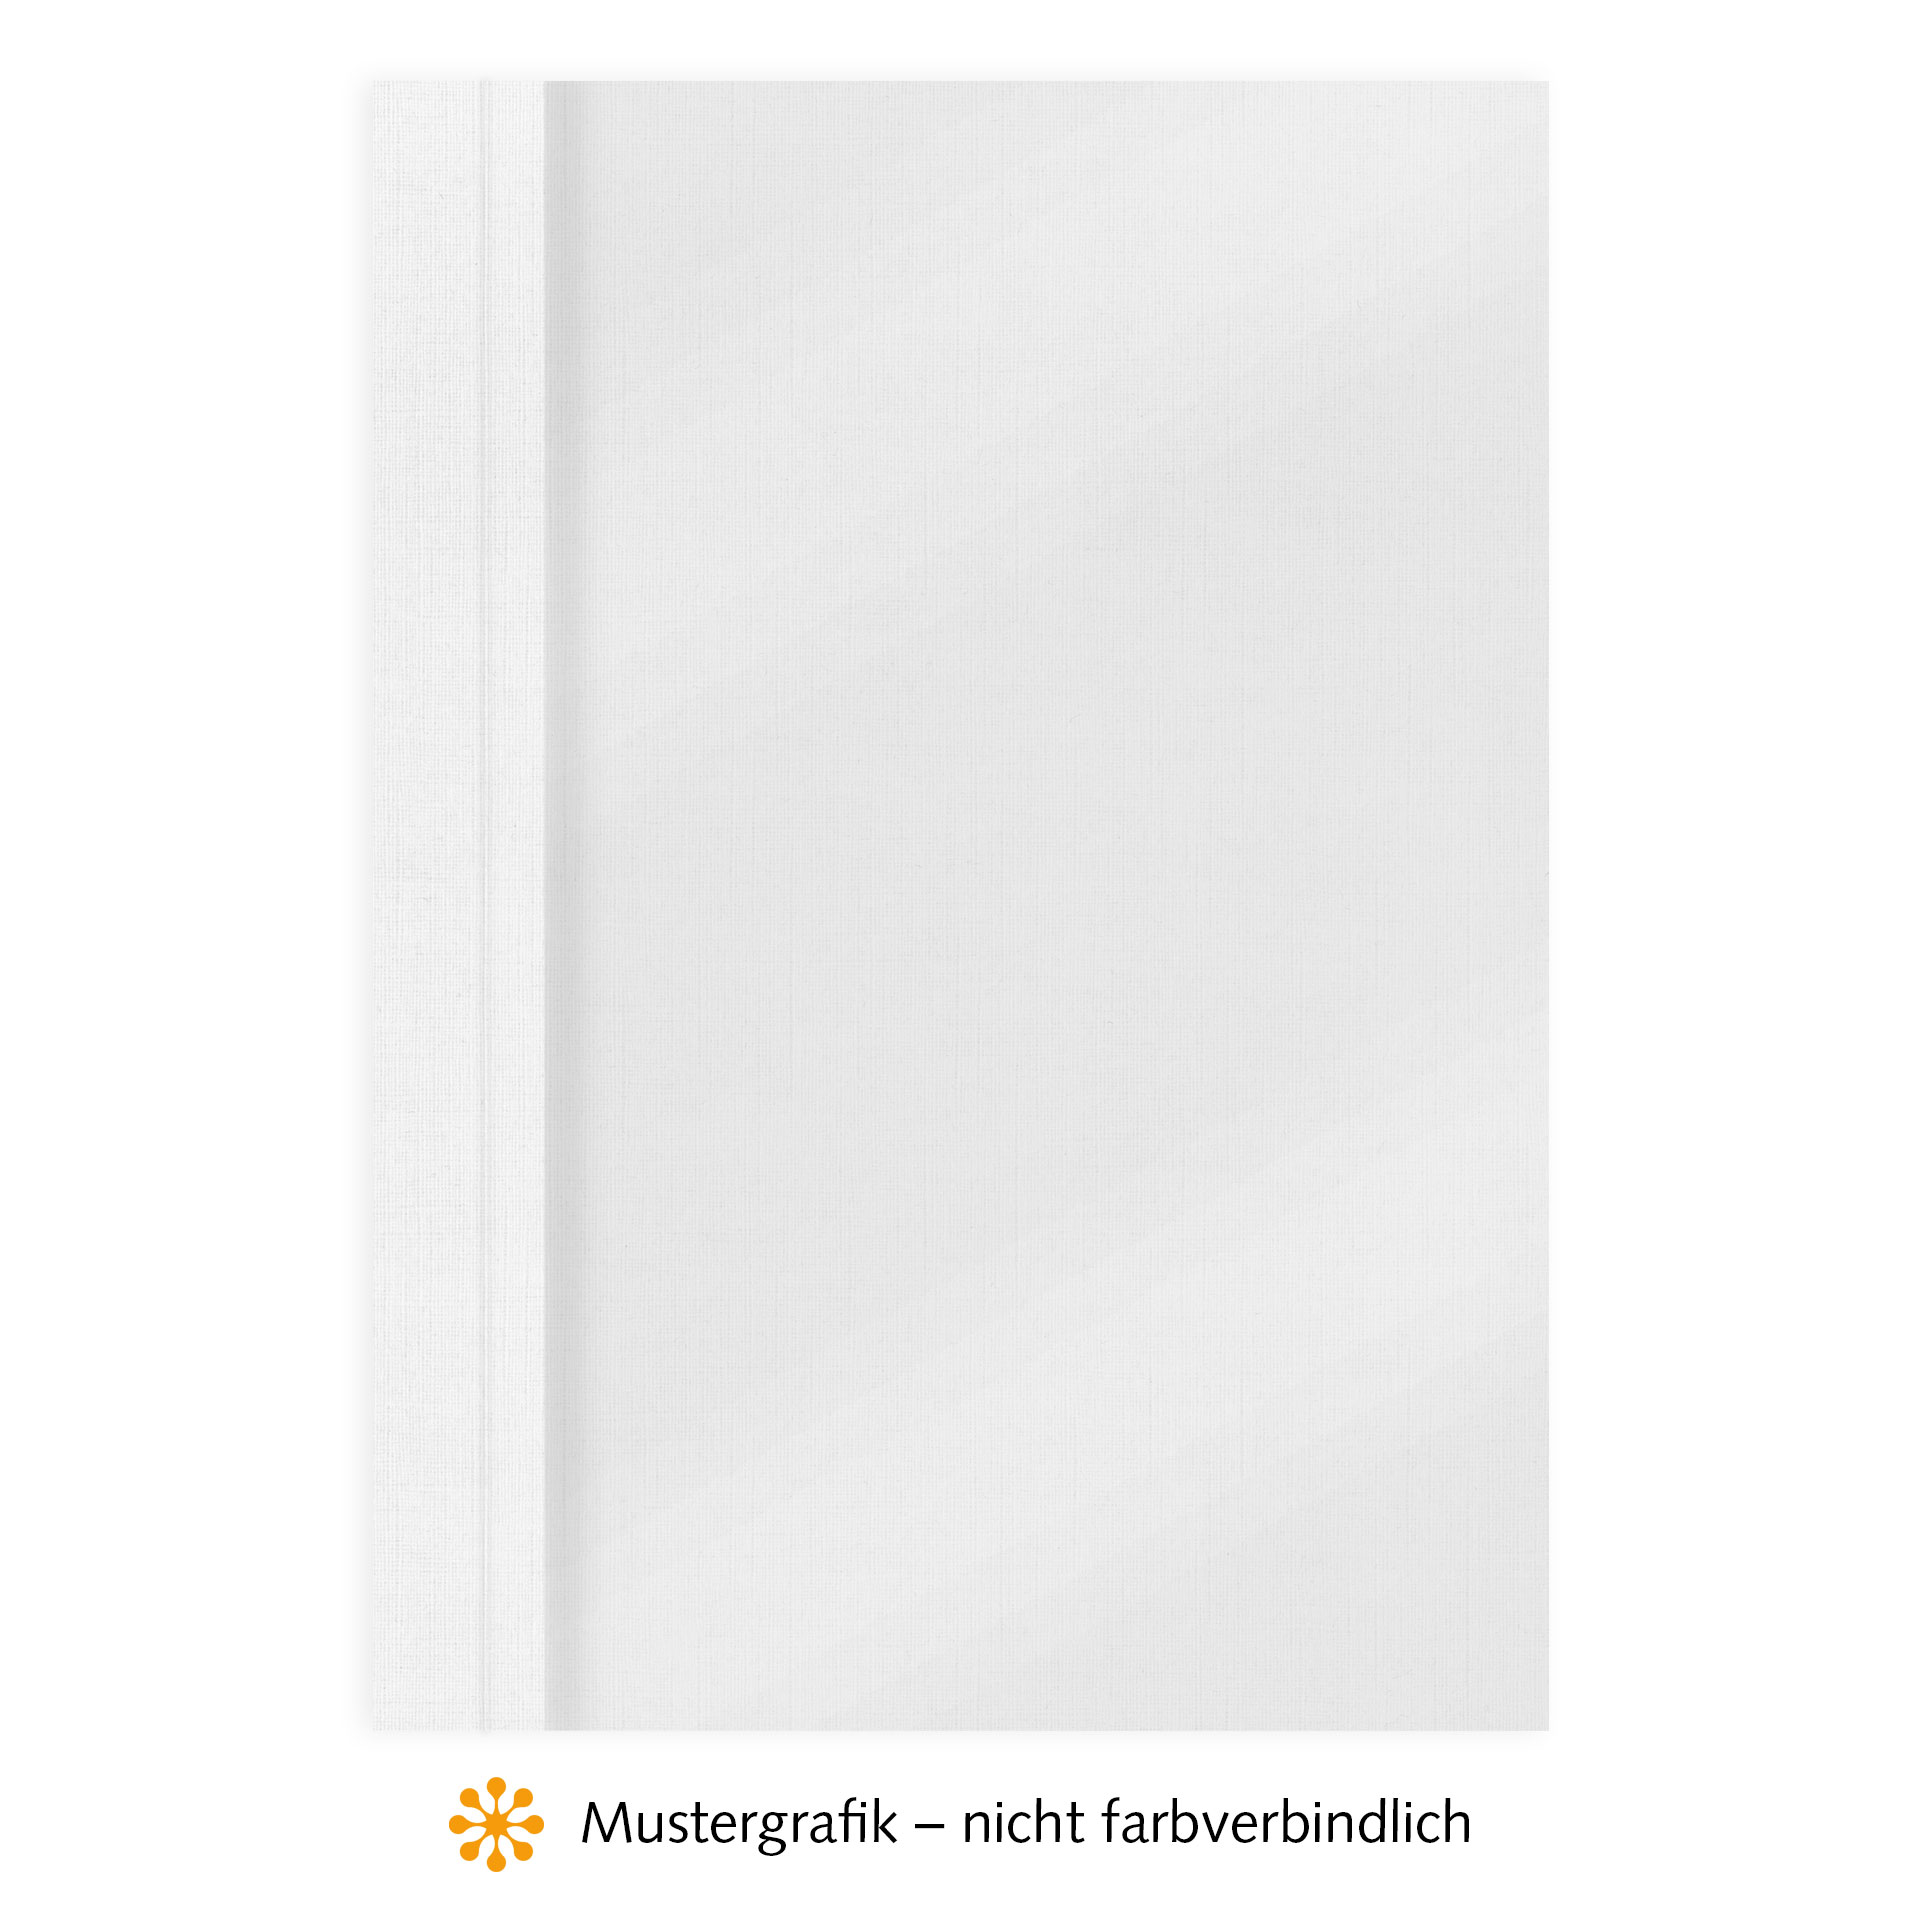 Ösenmappen DUO Cover, Vorderseite Folie MATT transparent, Rückseite Karton Leinen, Weiß, 2 mm, 11 bis 20 Blatt